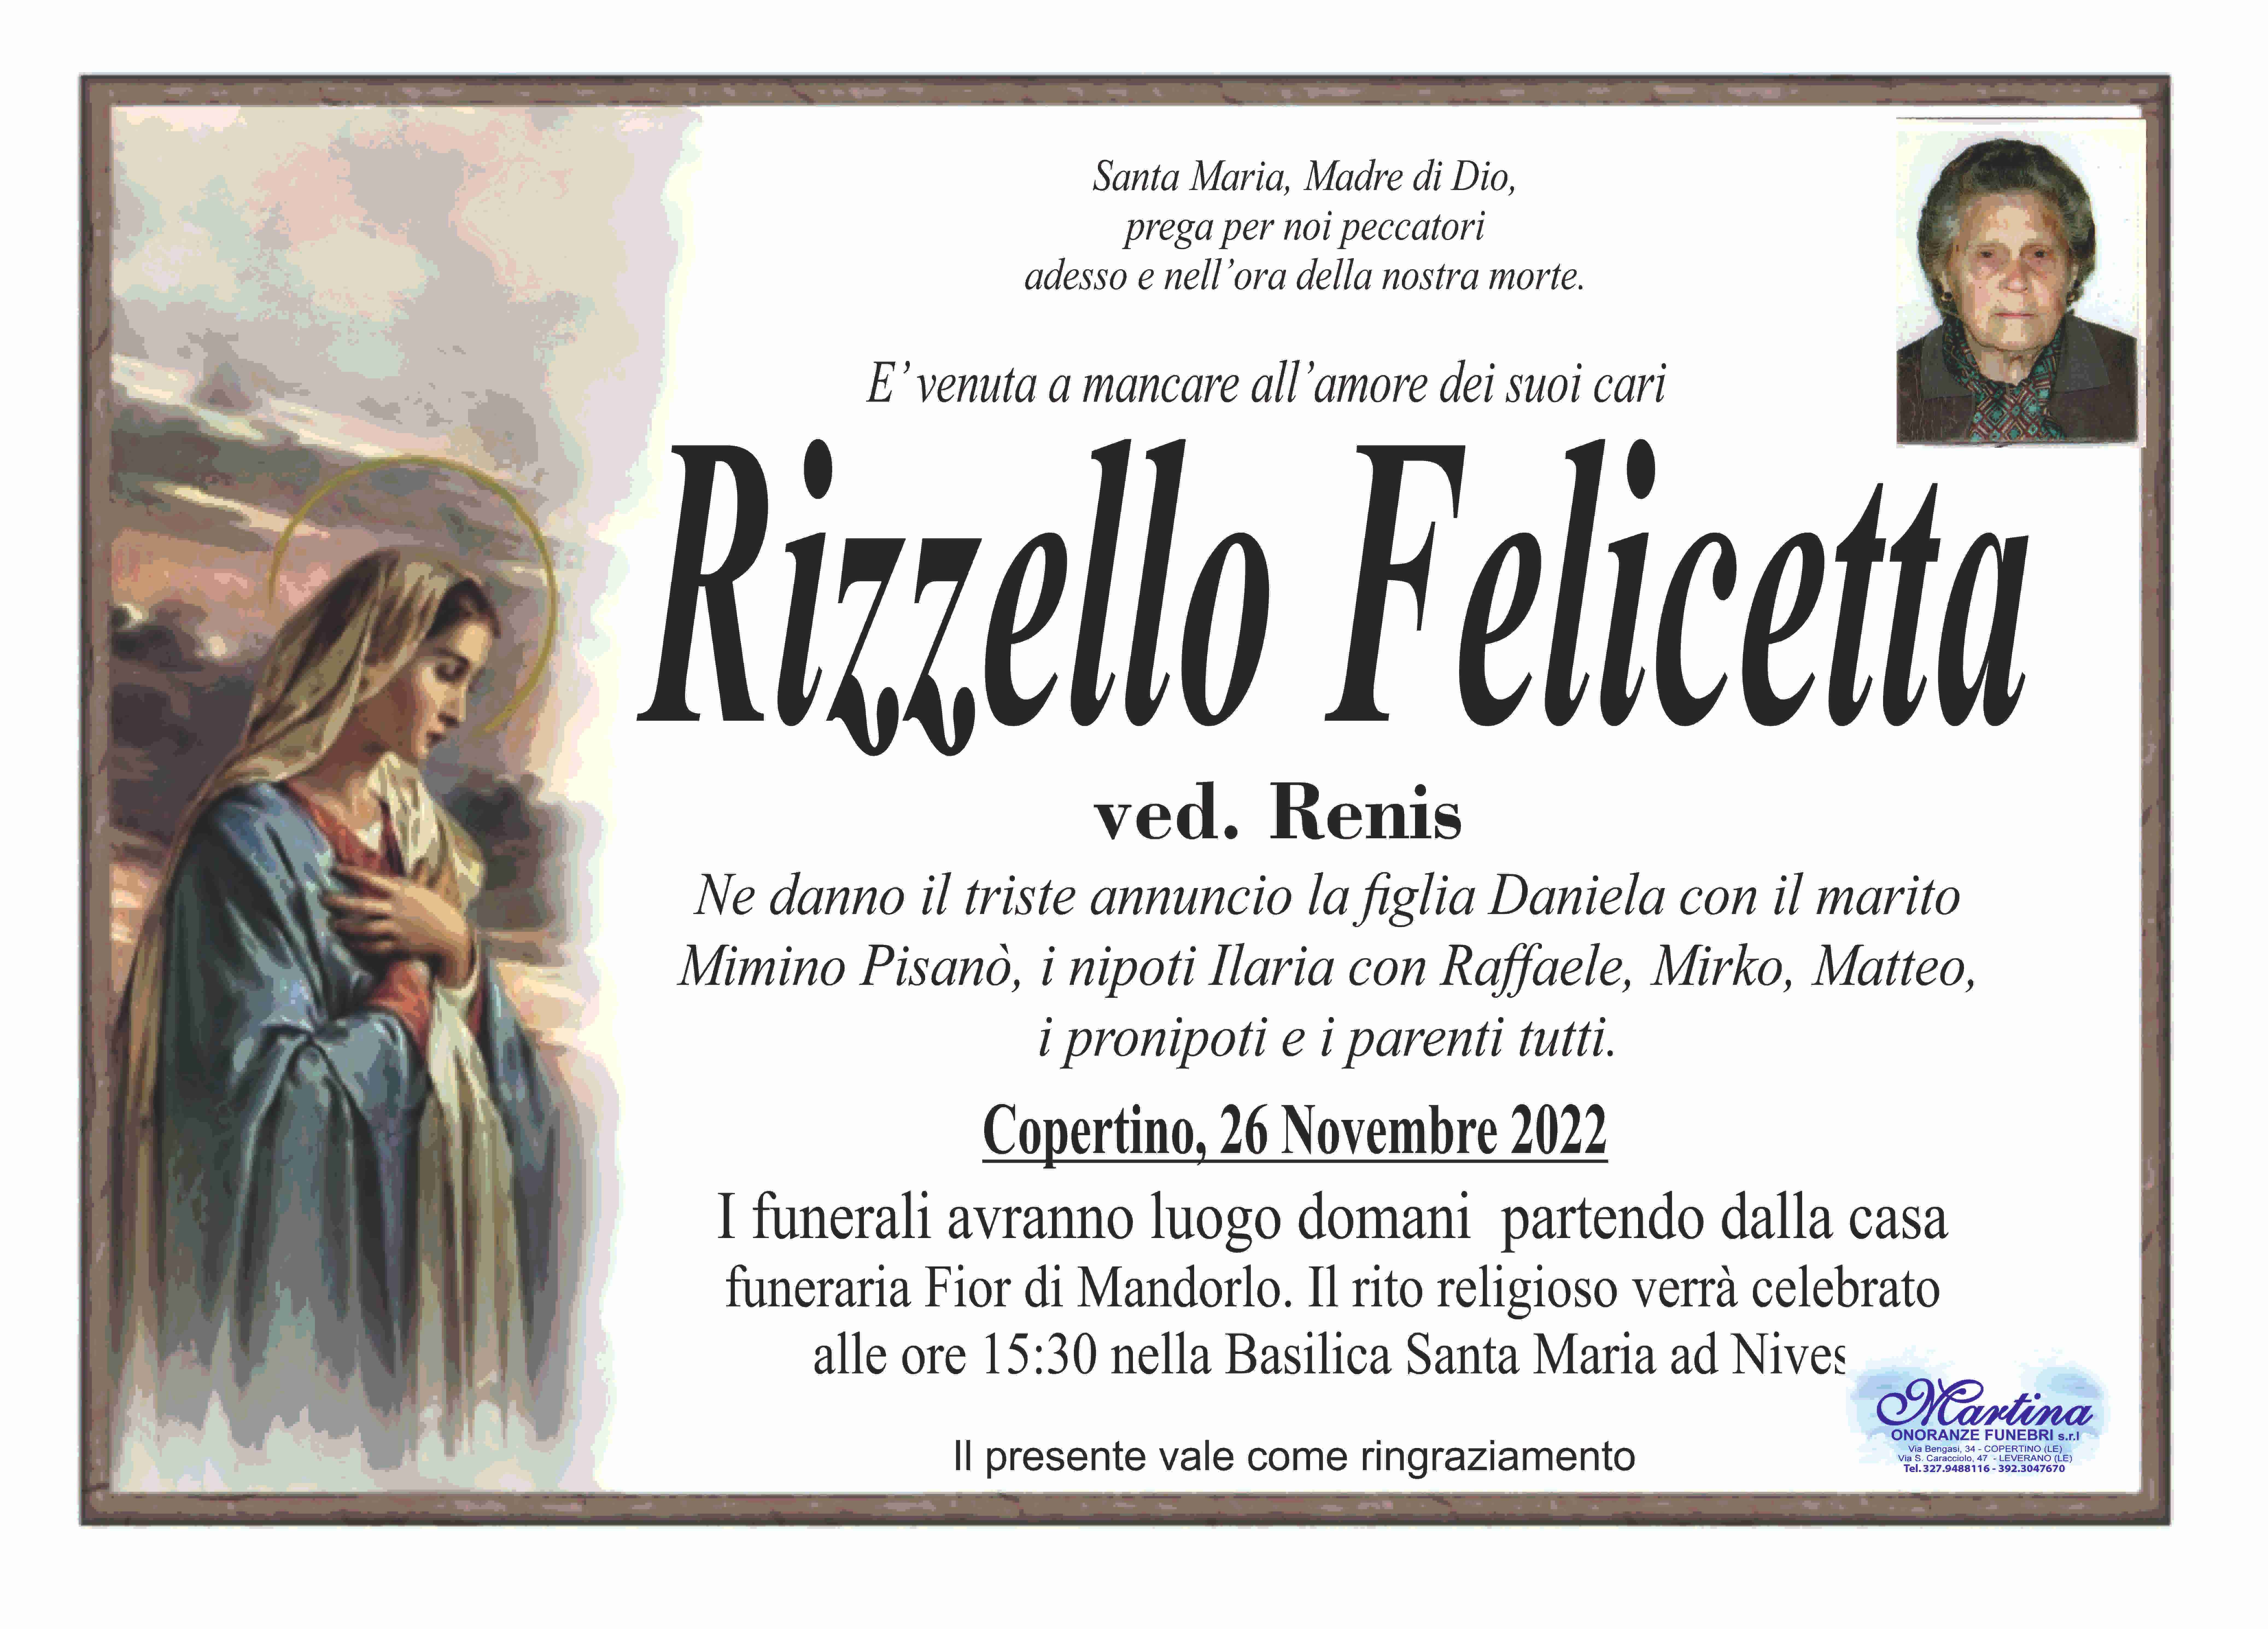 Felicetta Rizzello